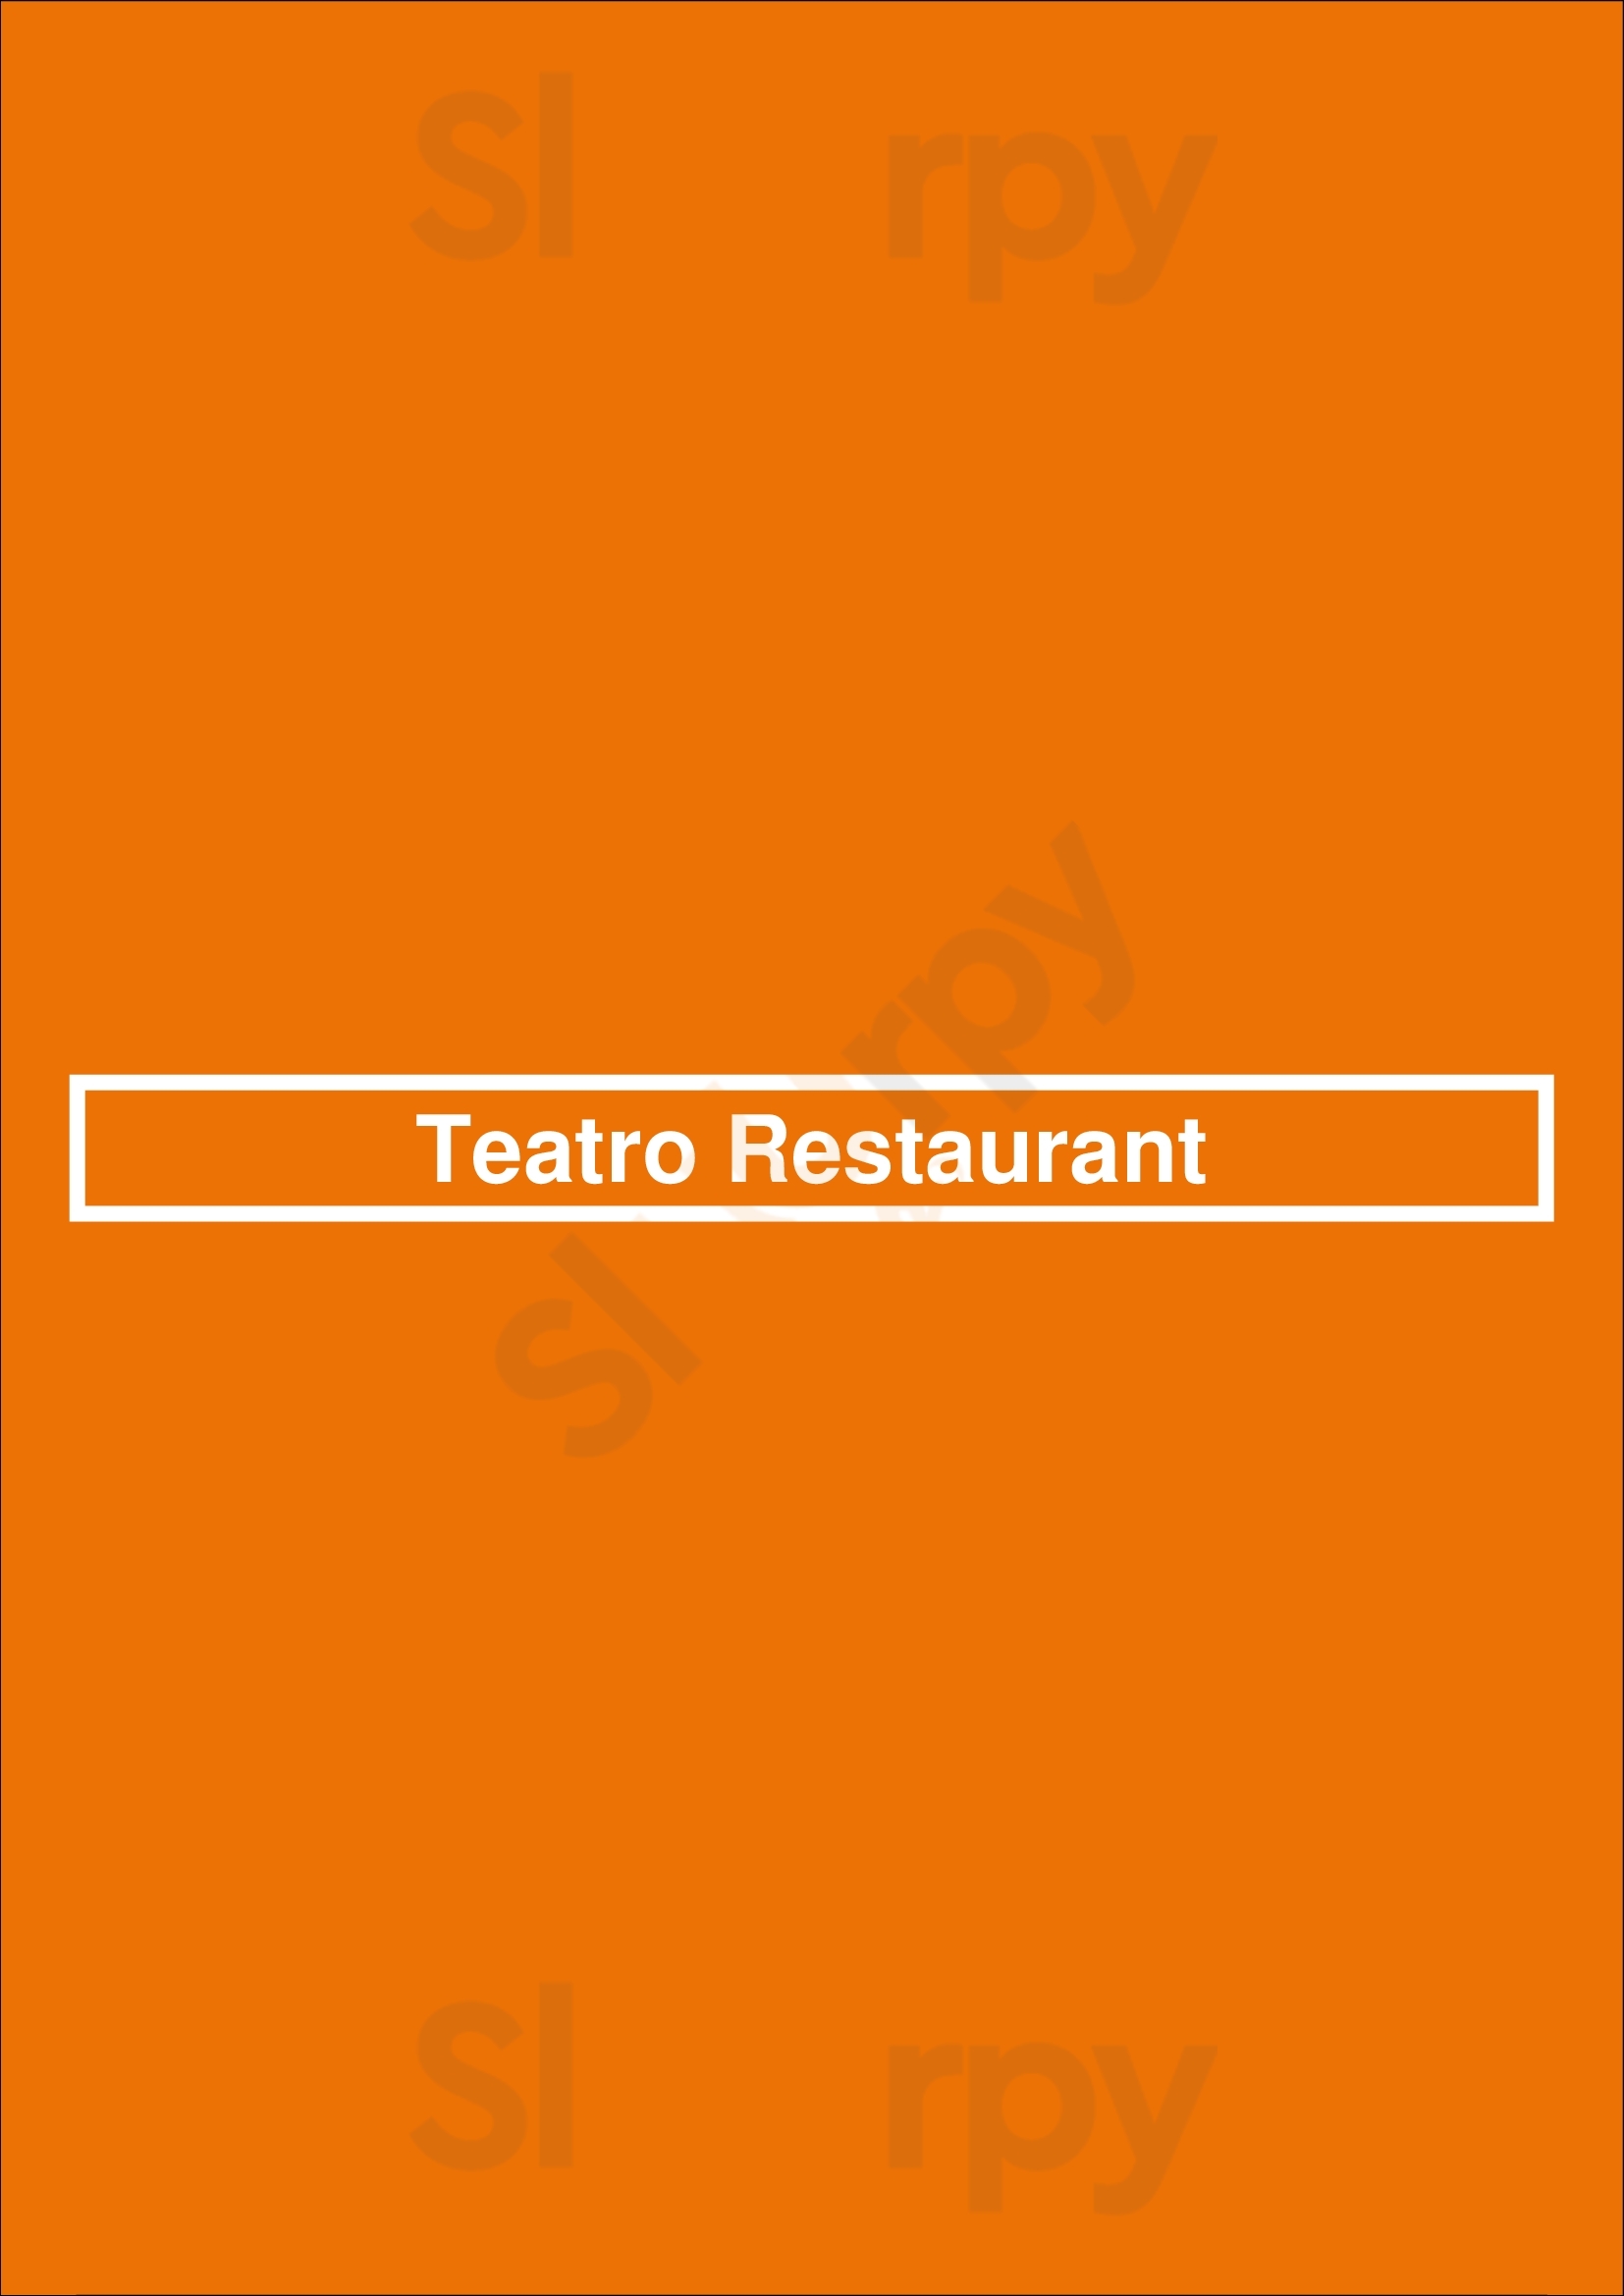 Teatro Restaurant Calgary Menu - 1